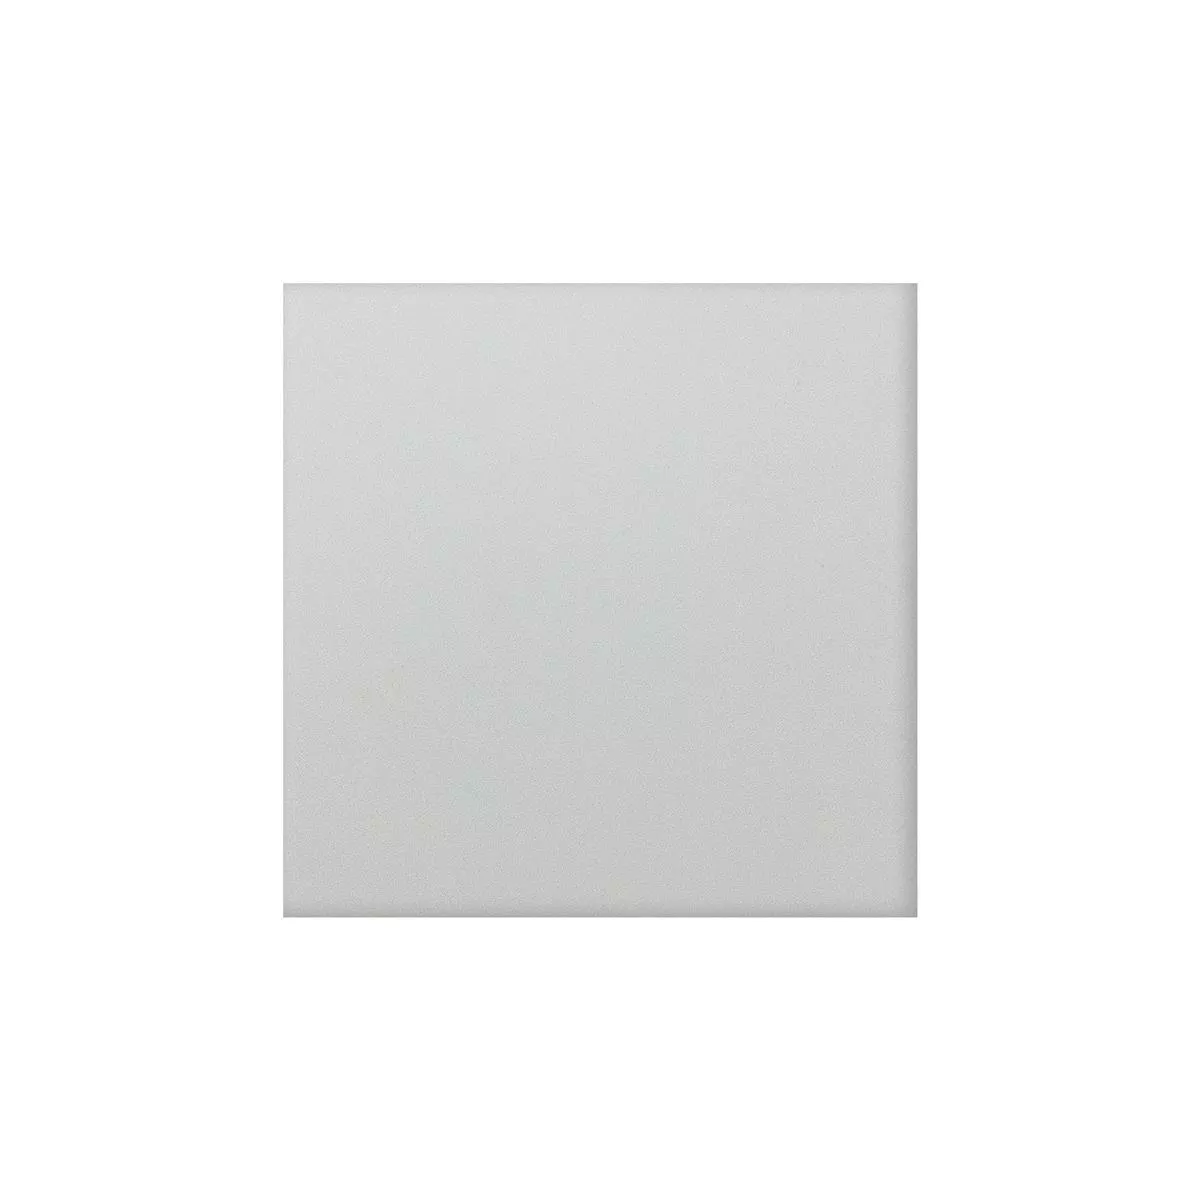 Gresie Portelanata Gresie Genexia Uni Cremă Rosone 4,6x4,6cm